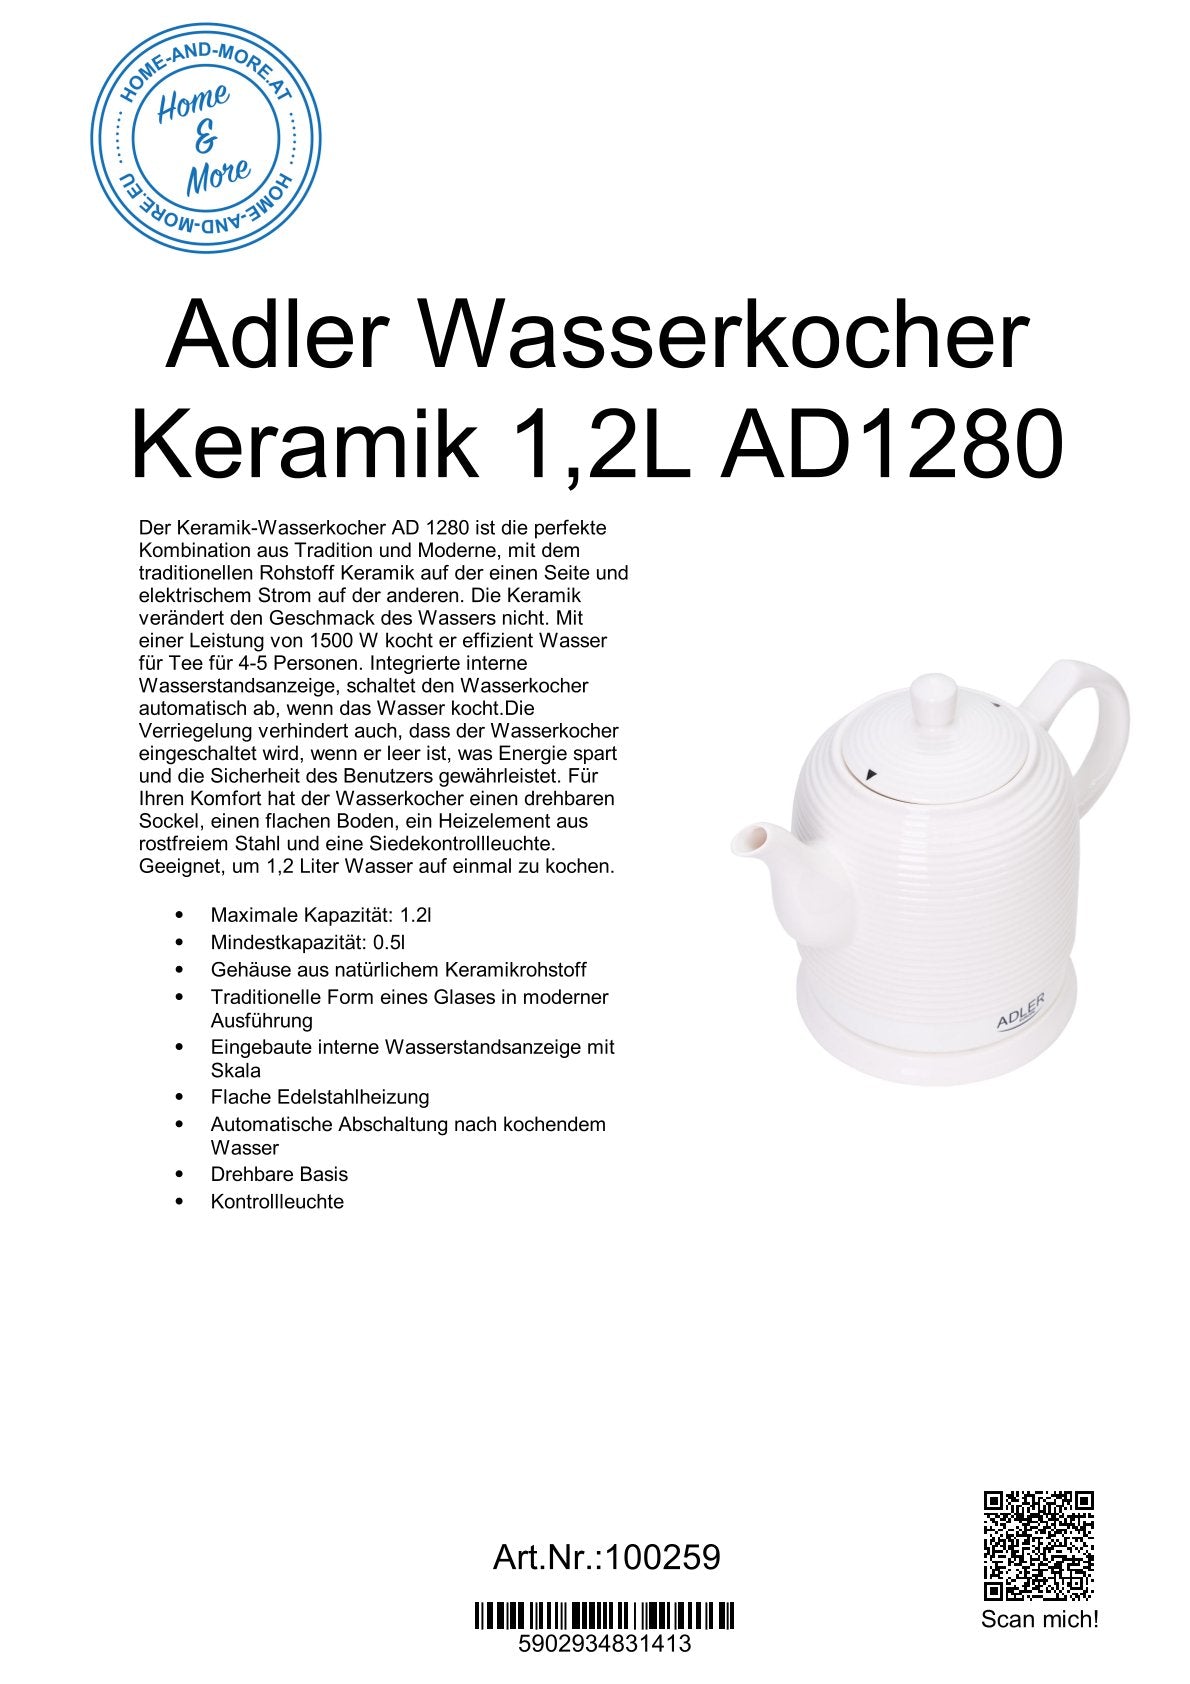 Adler Wasserkocher Keramik 1,2L AD1280